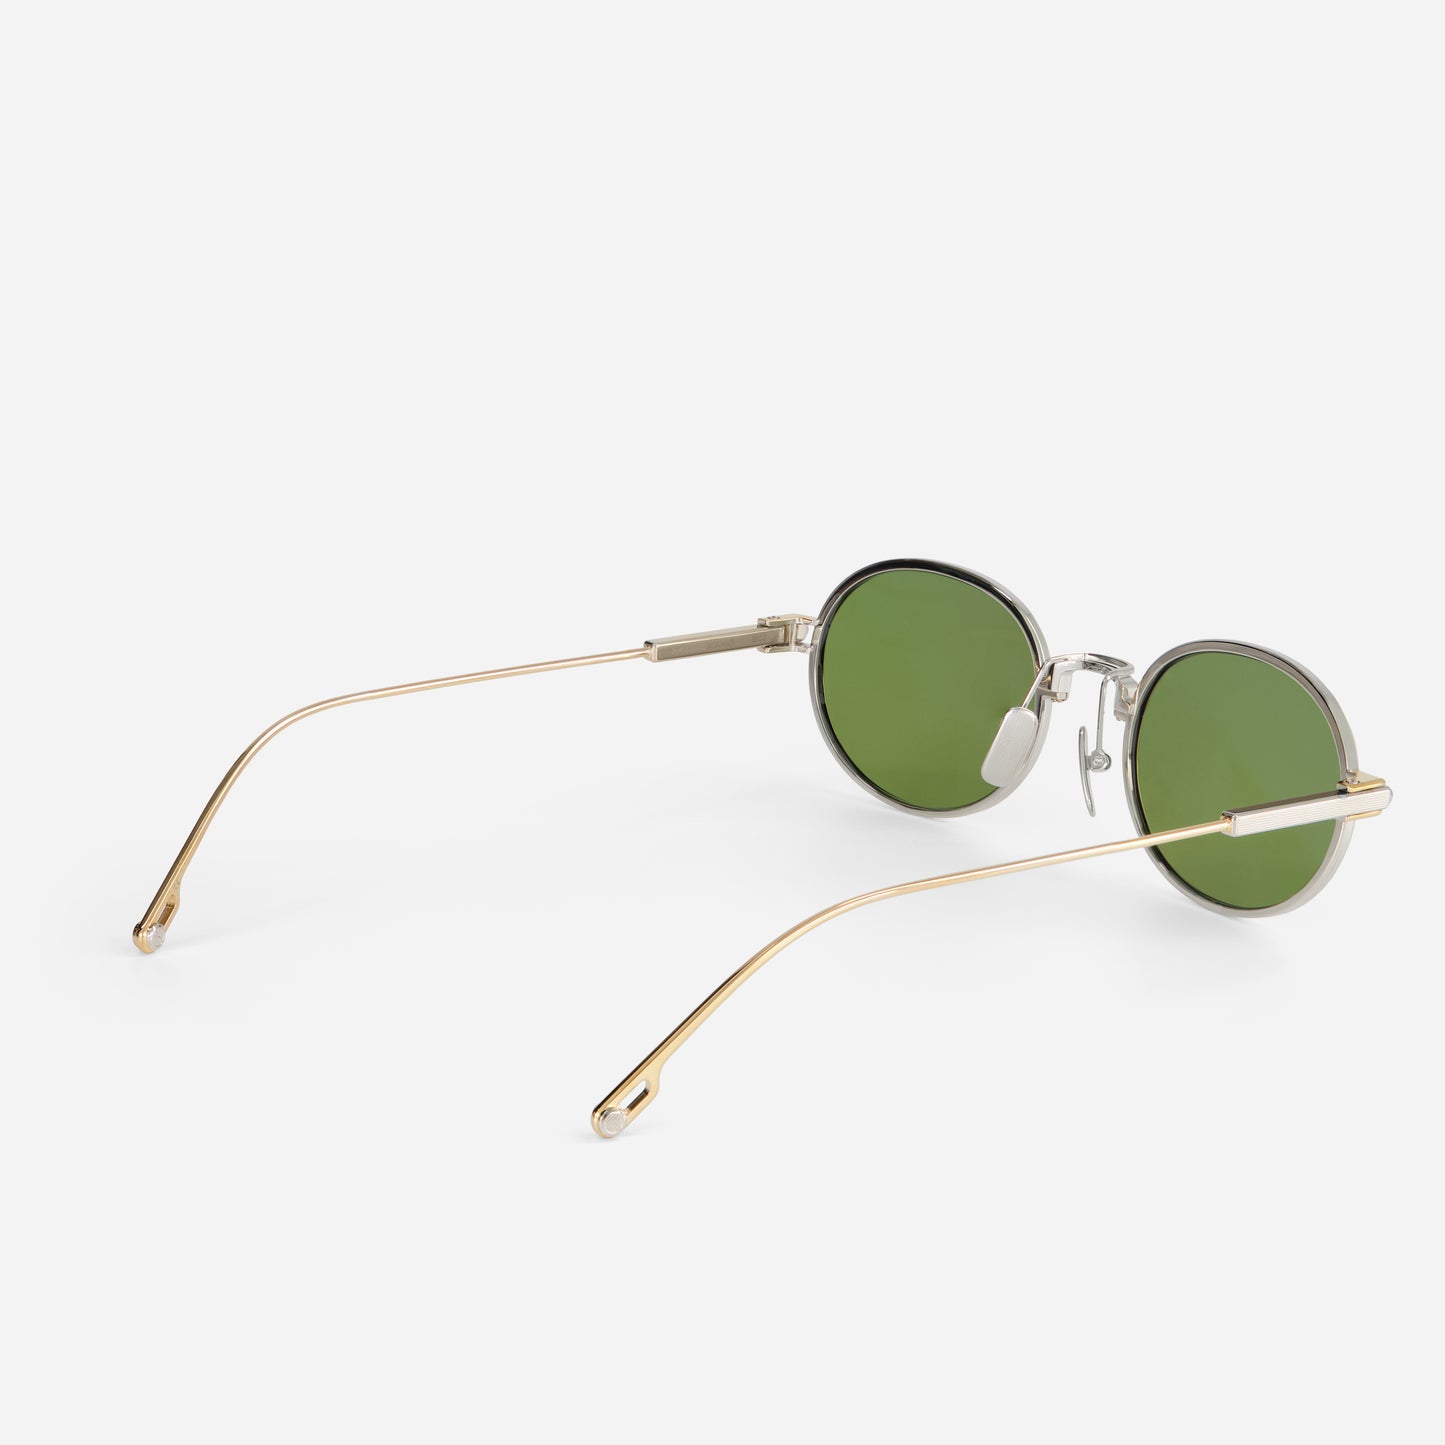 Acamar S103 - Sato sunglasses I unisex